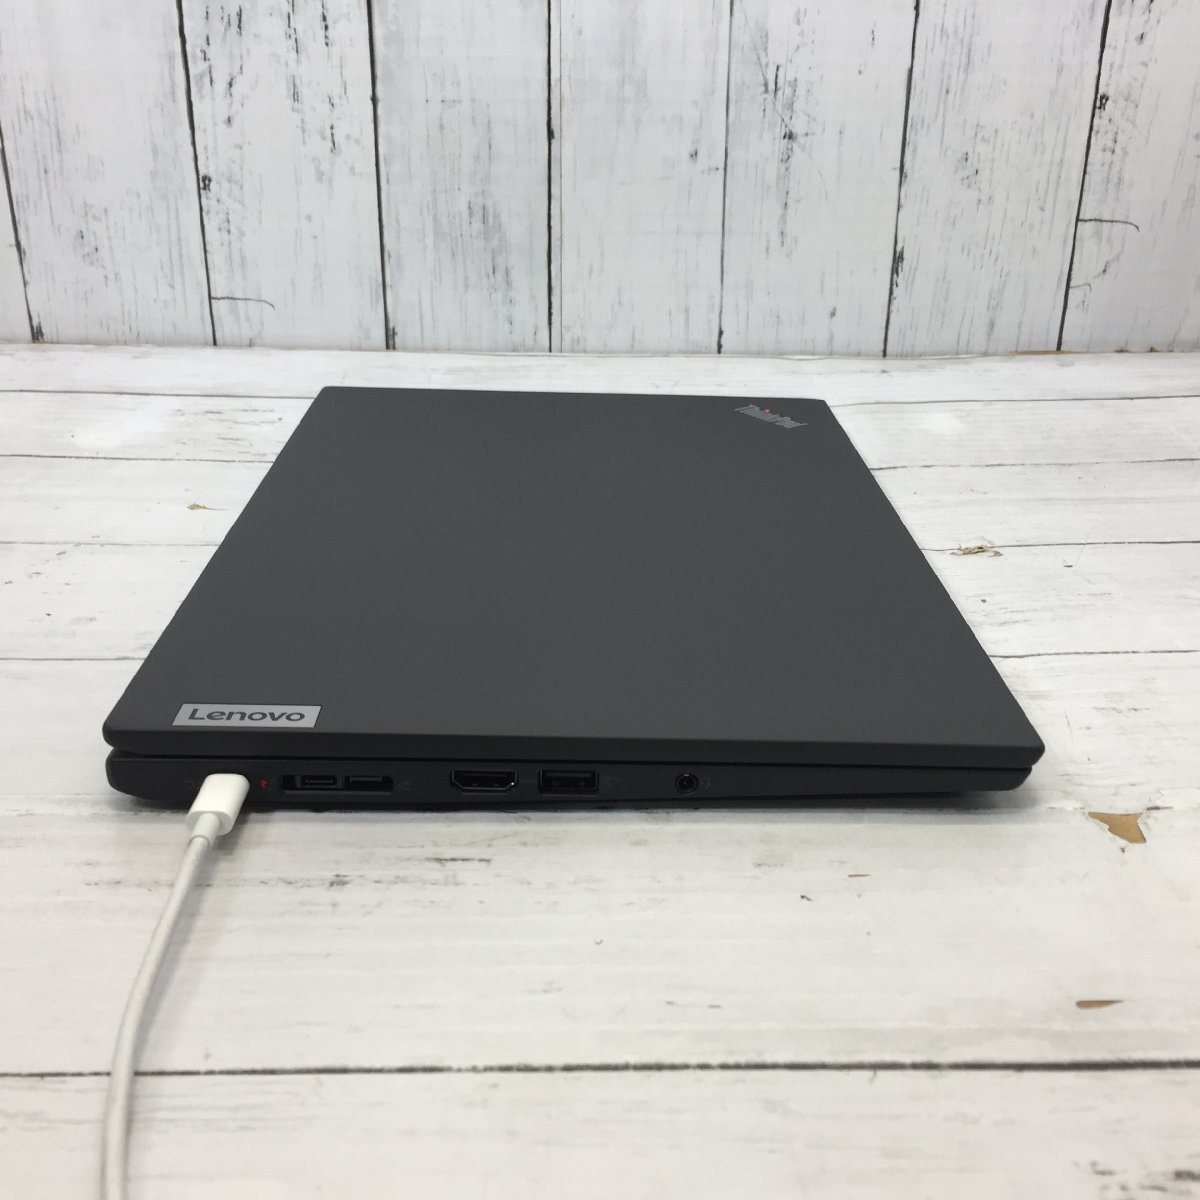 【難あり】 Lenovo ThinkPad X13 20WL-CTO1WW Core i7 1165G7 2.80GHz/16GB/256GB(NVMe) 〔0403N36〕_画像6